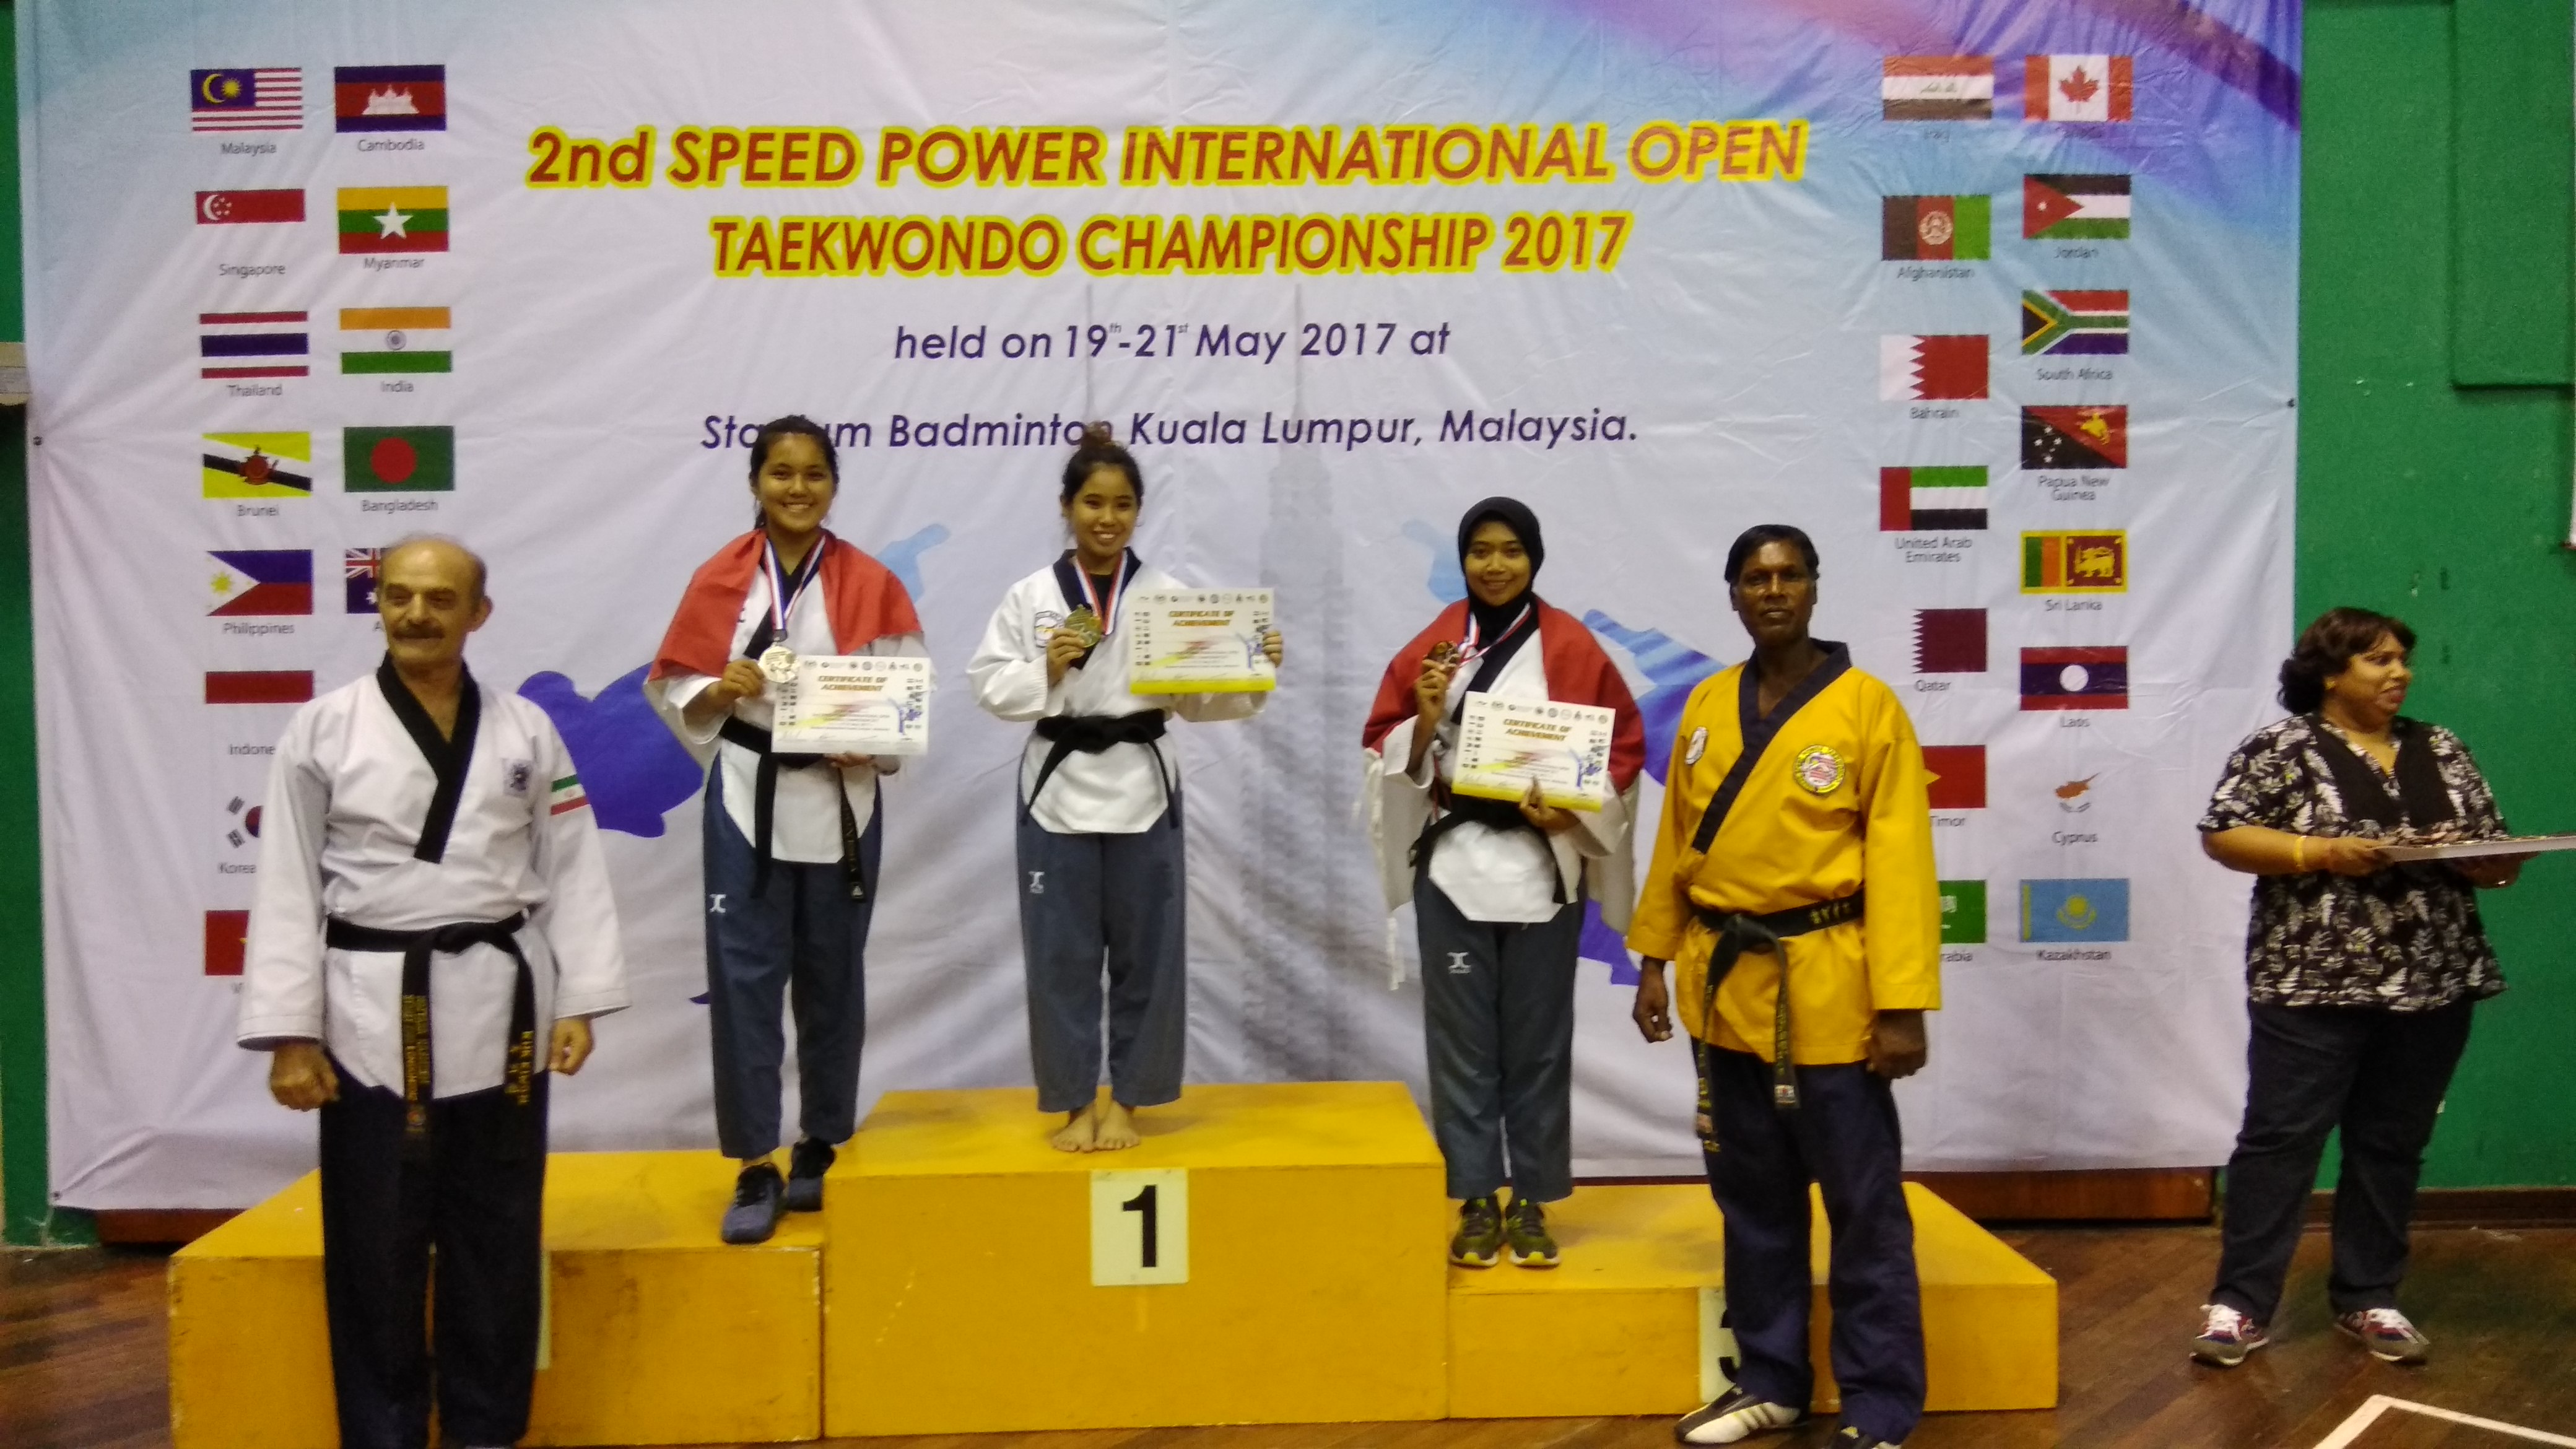 Foto 2nd Speed Power  International Open Taekwondo Championship 2017